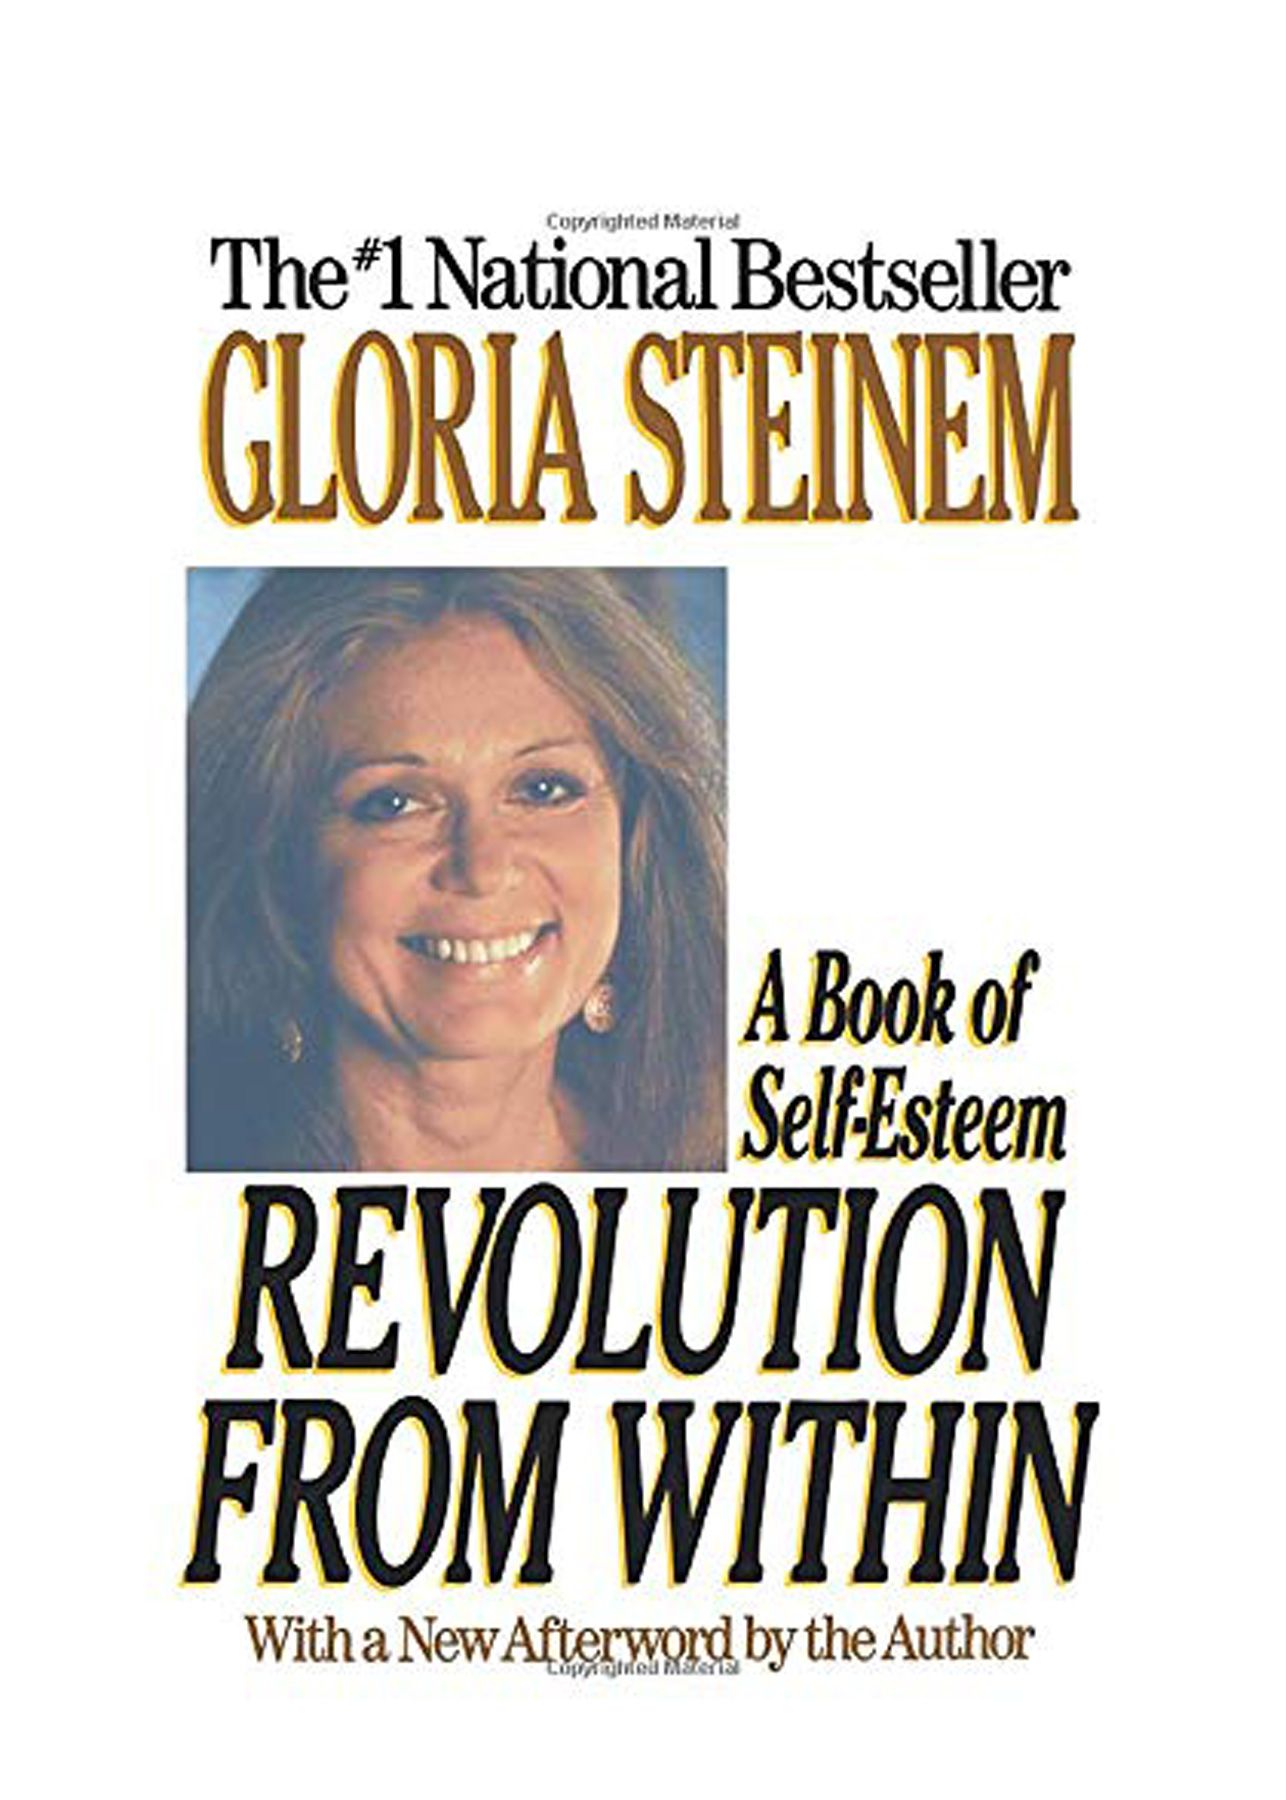 Bra böcker att läsa i 20-årsåldern: 'Revolution inifrån' av Gloria Steinem